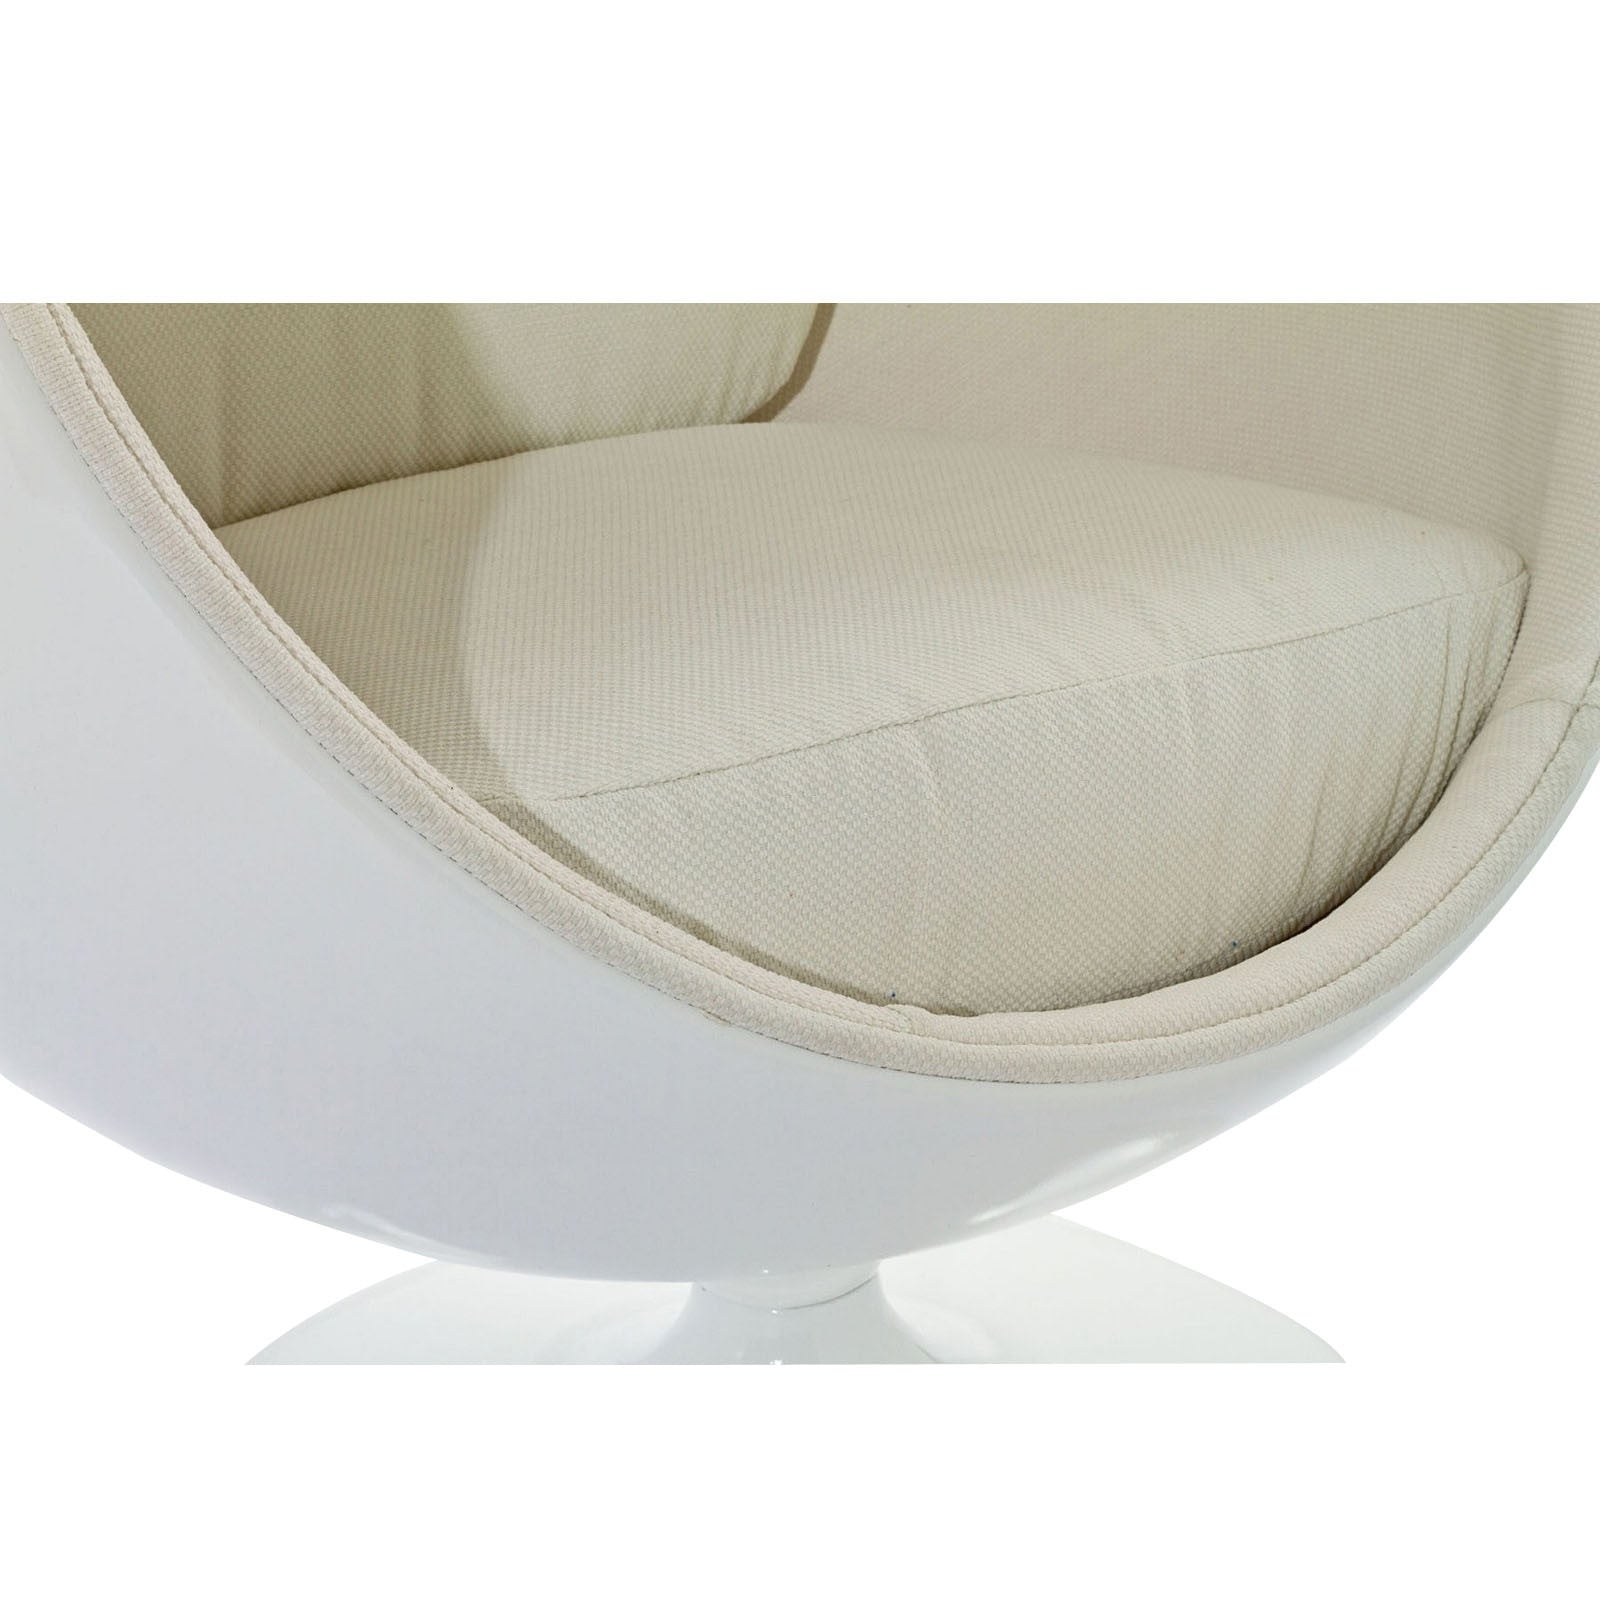 Keane Lounge Chair White